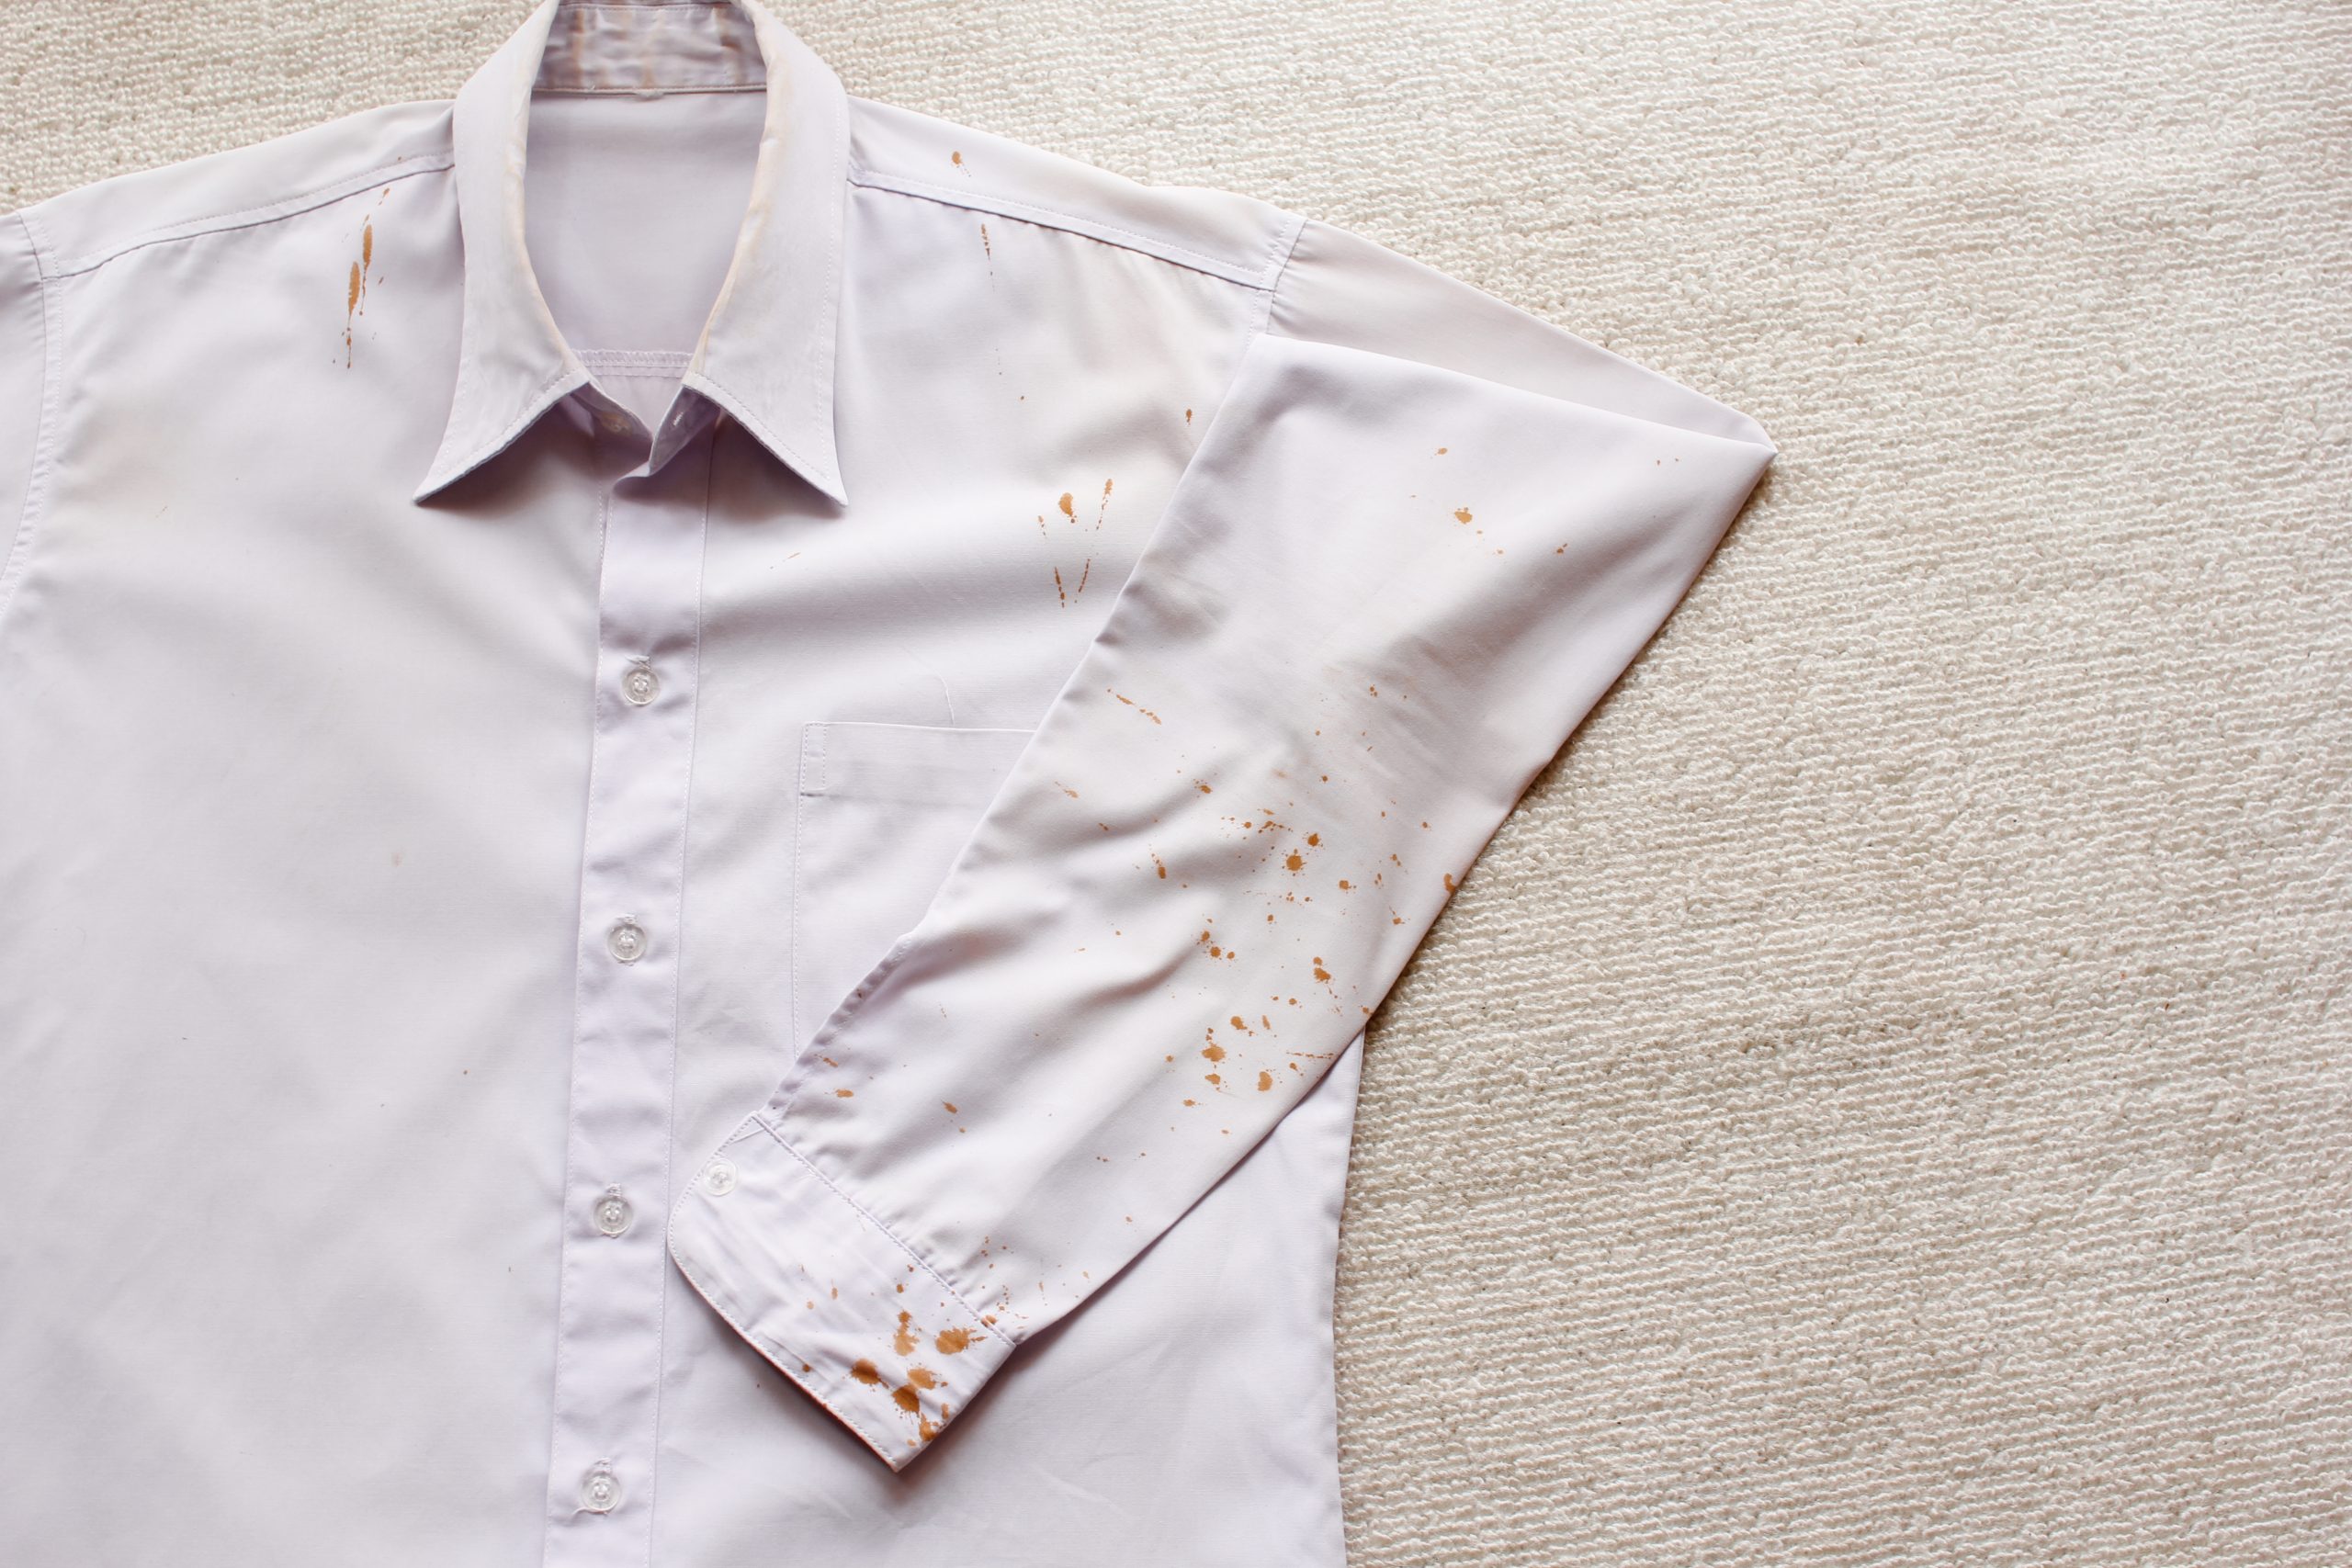 Camisa social clara e de botões, estendida sobre uma superfície reta com o braço esquerdo dobrado sobre o corpo da camisa, salpicado por diversas manchas de ferrugem.